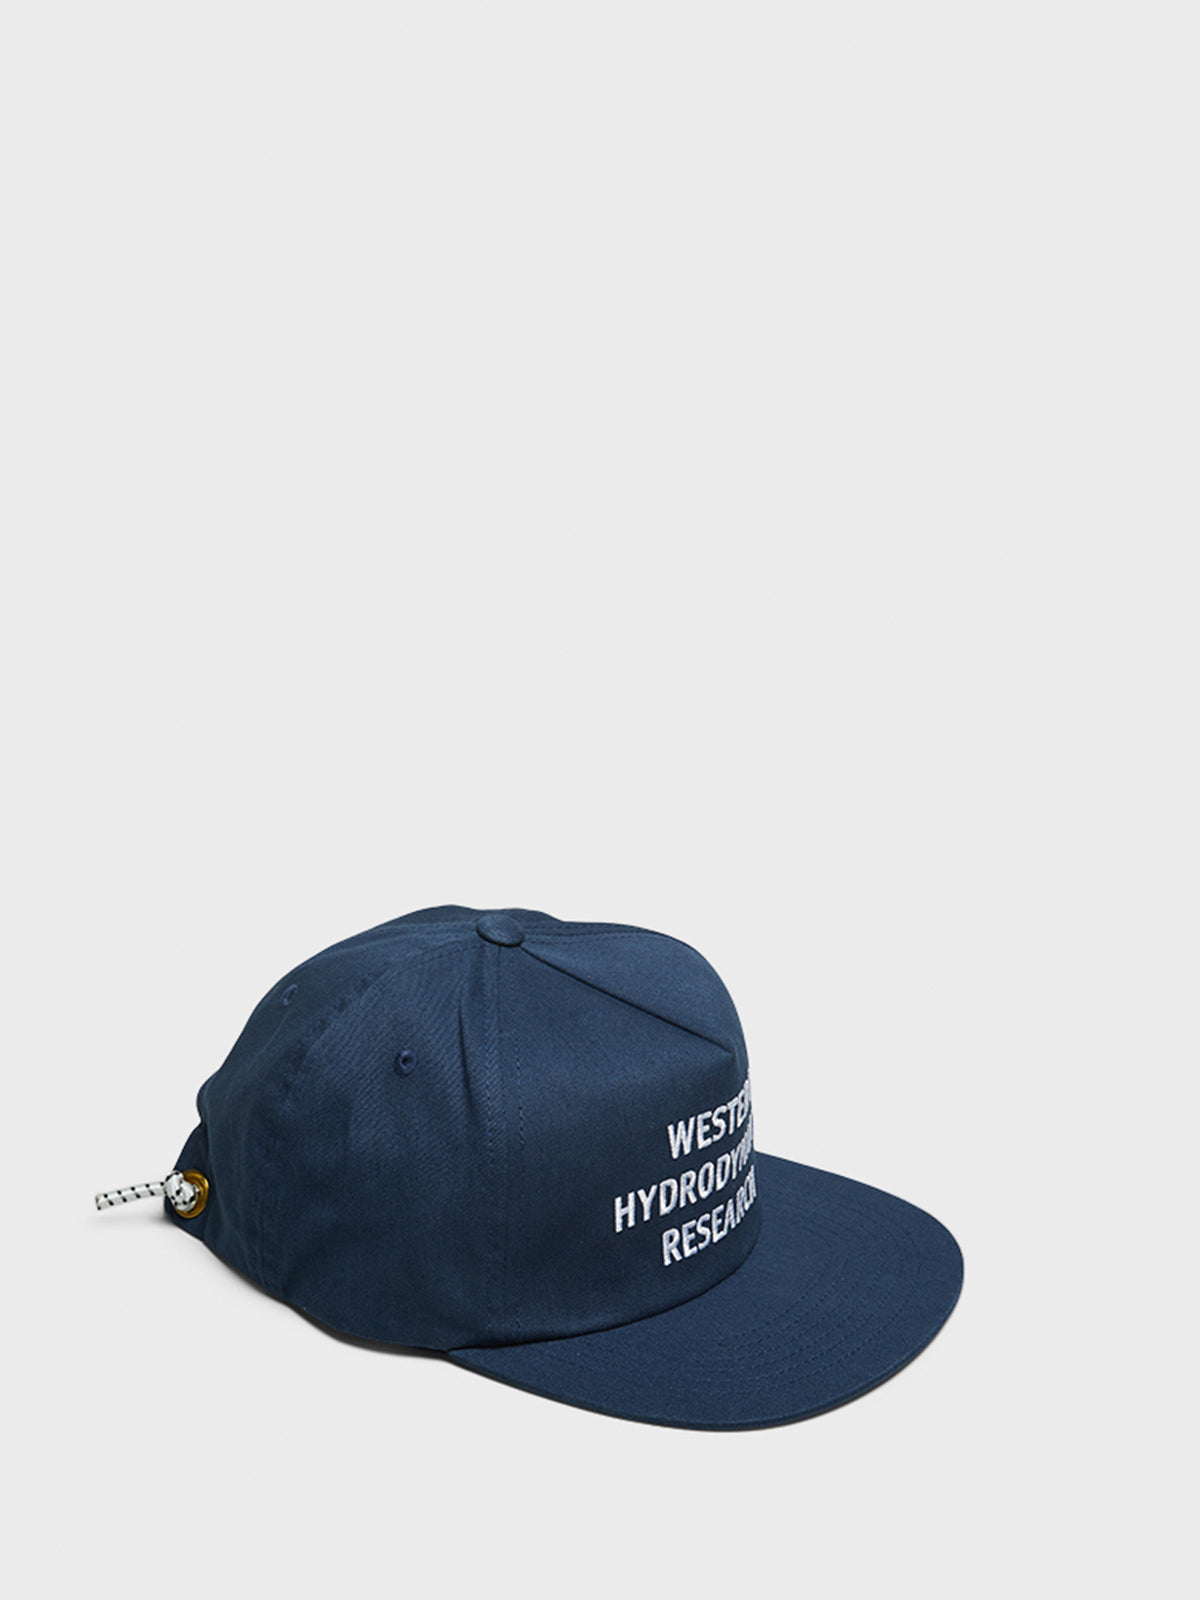 Promo Hat in Navy